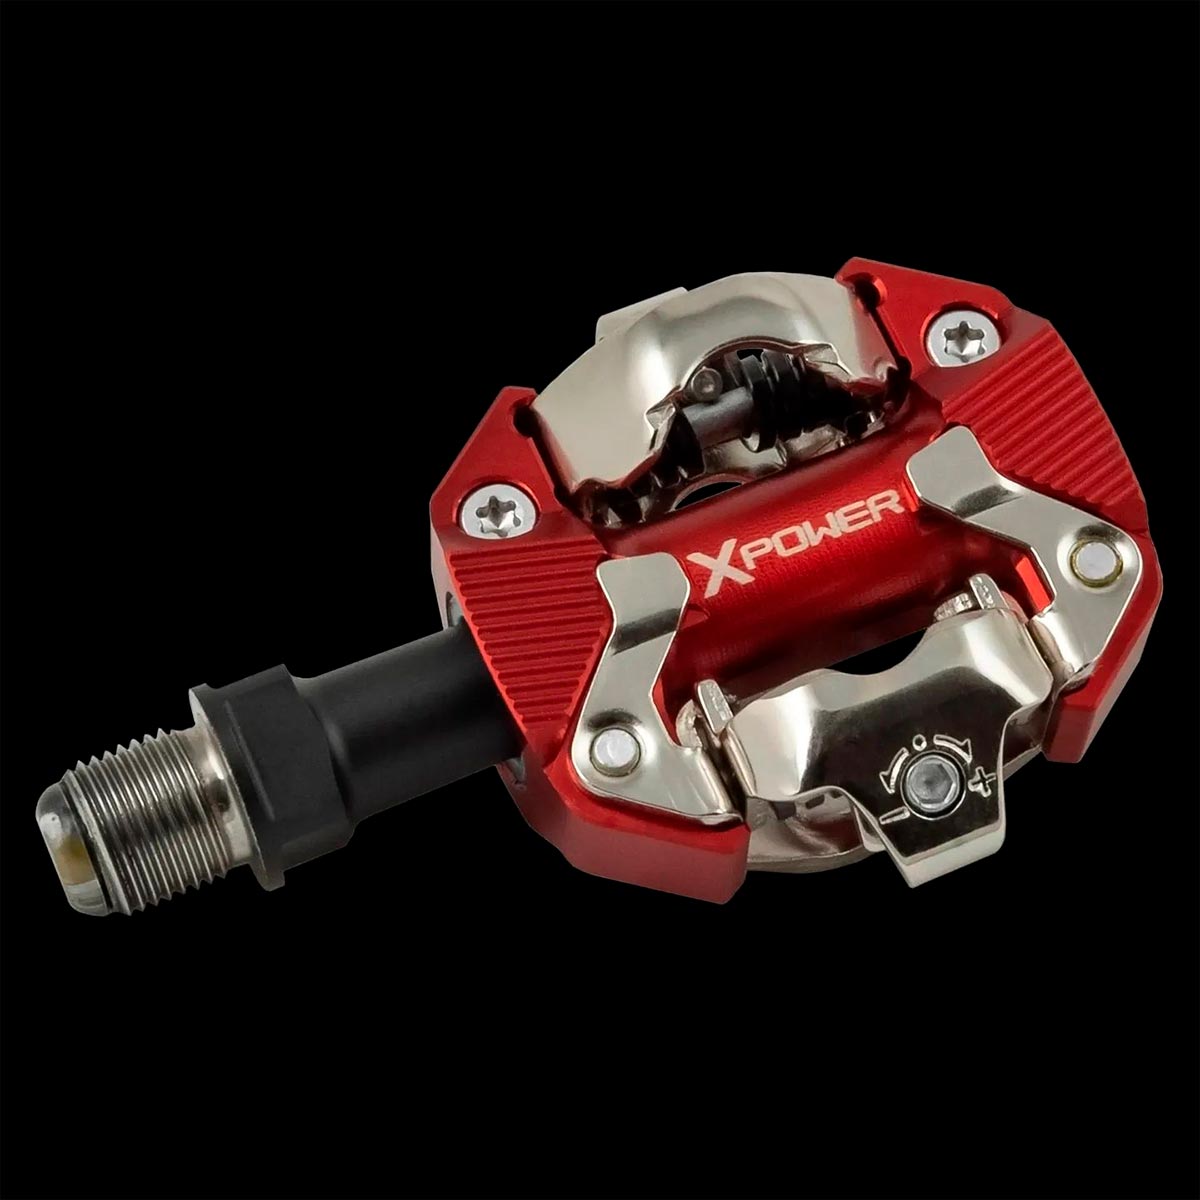 SRM actualiza su pedal X-Power con potenciómetro, ahora más resistente y con mayor superficie de apoyo